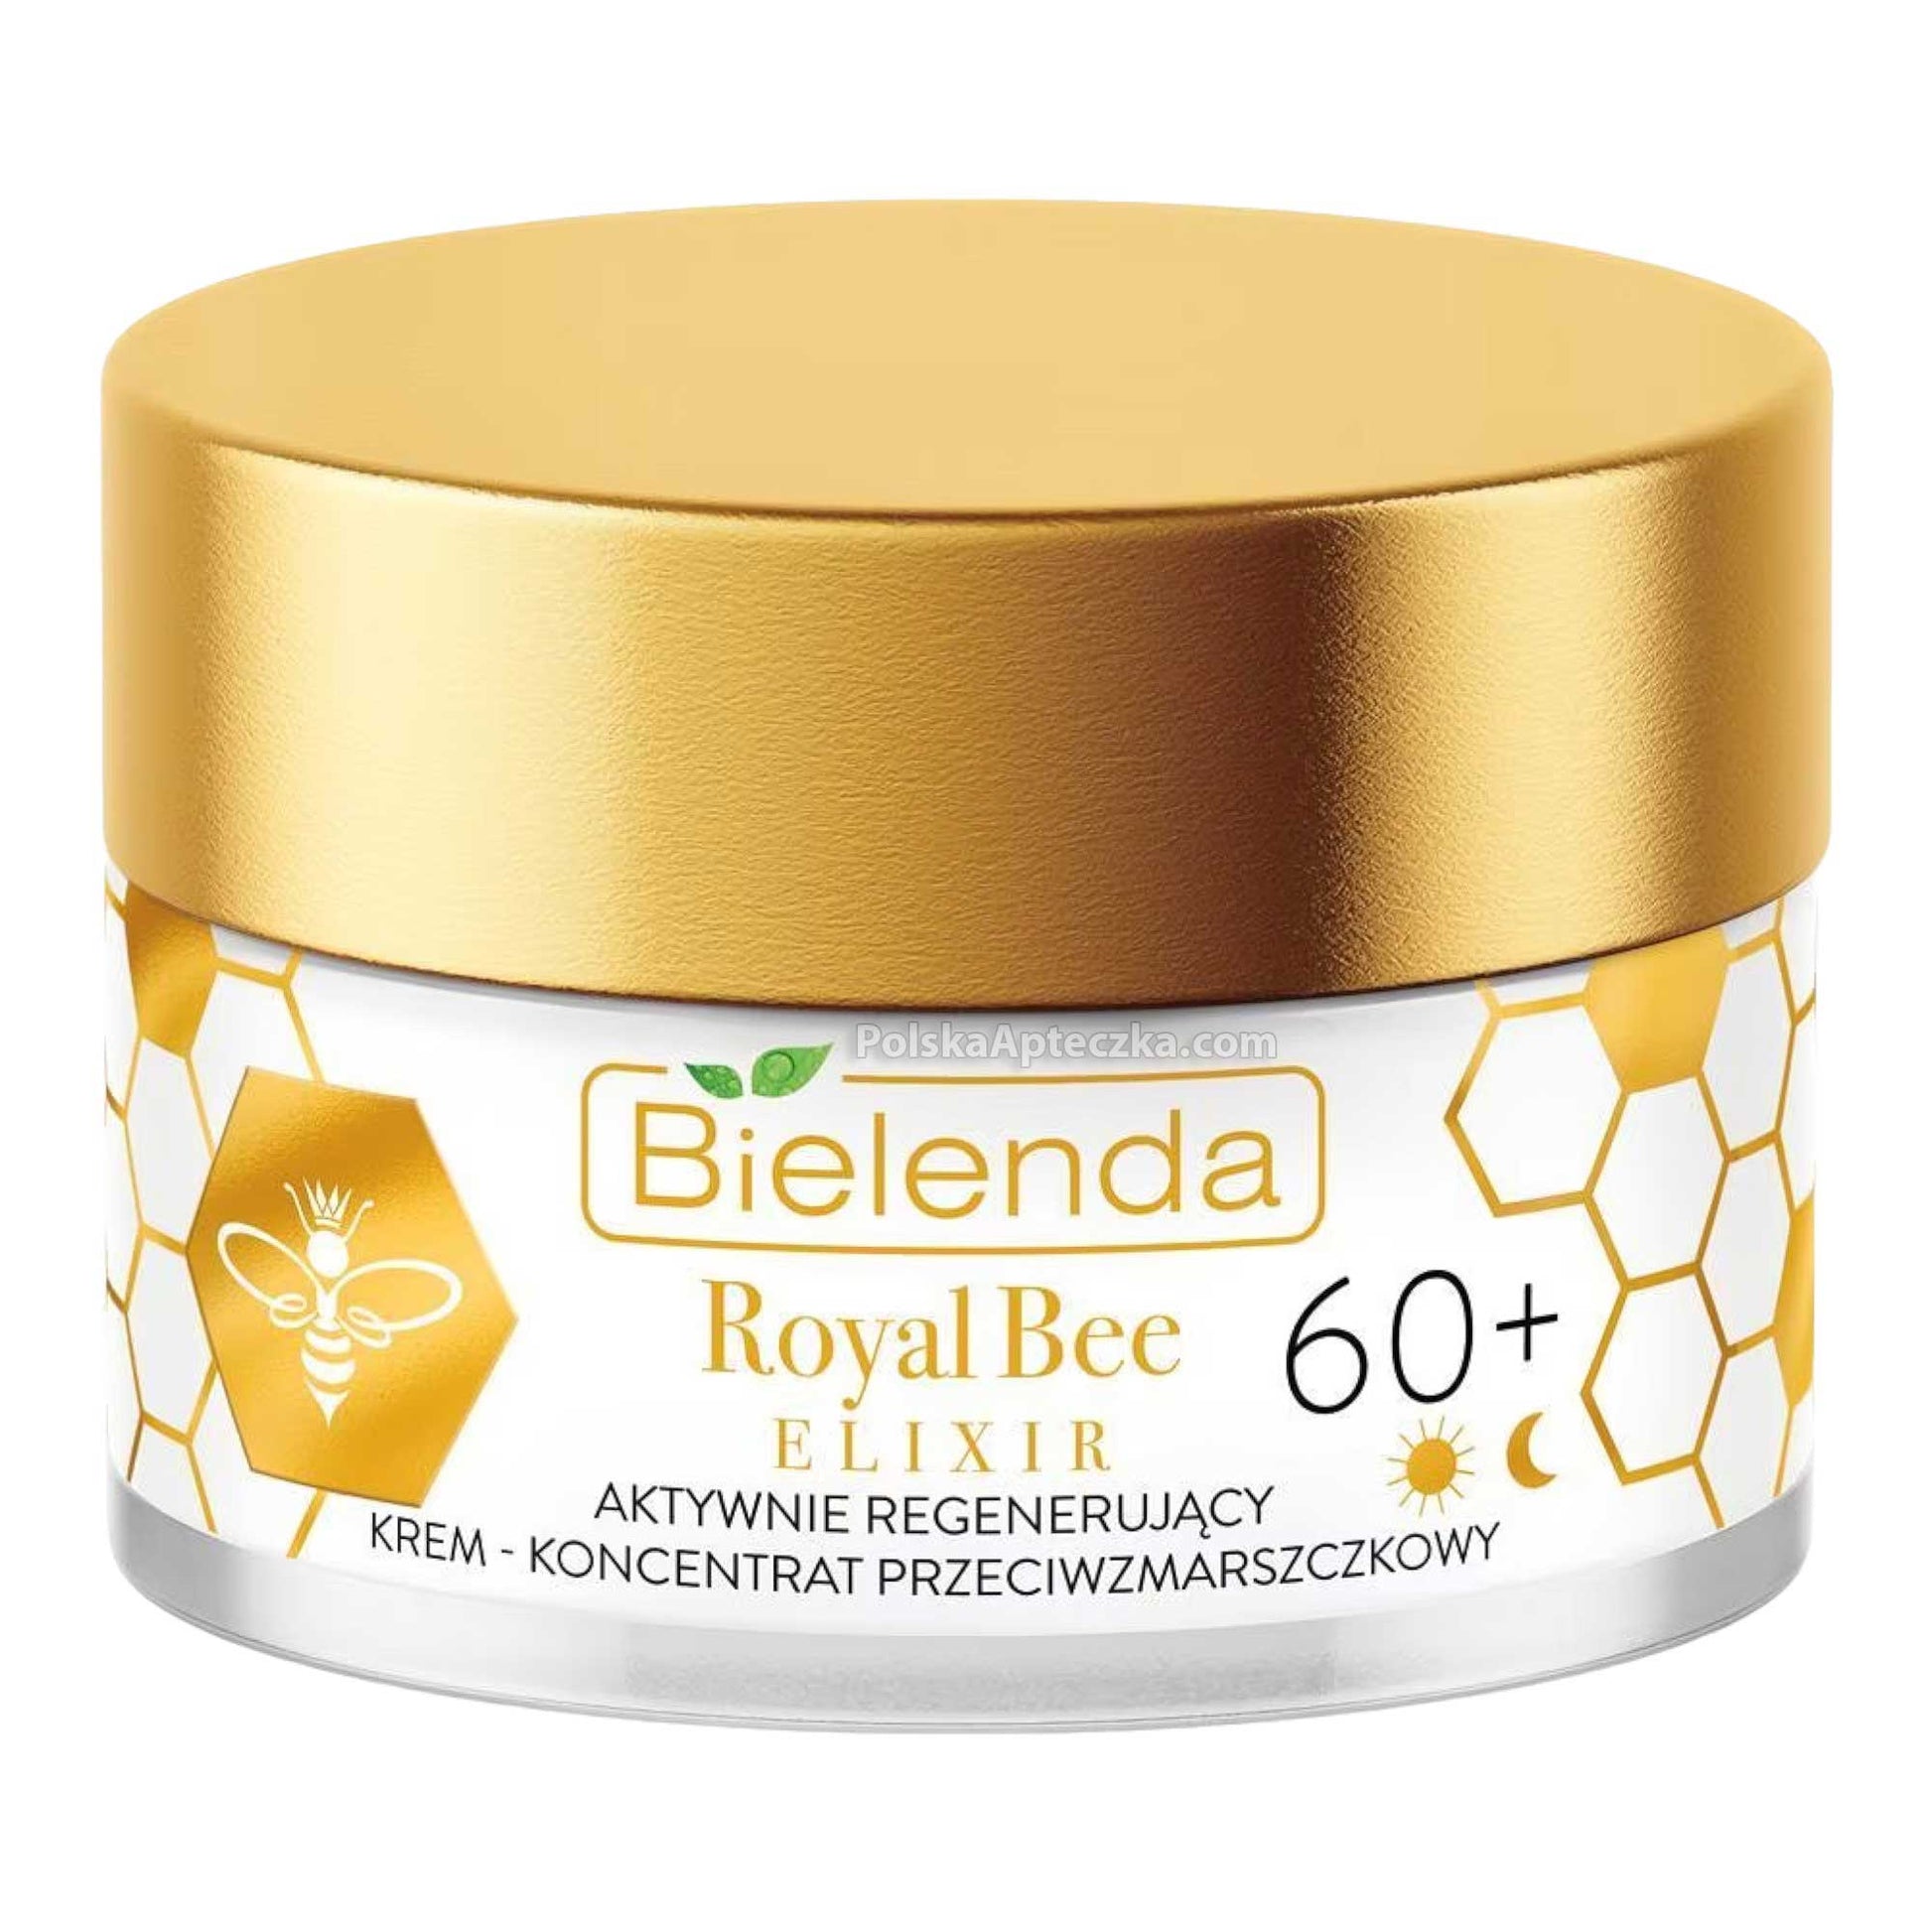 Bielenda, Royal Bee Elixir, 60+ Aktywnie regenerujacy krem - koncentrat przeciwzmarszczkowy na dzien i noc 50 g